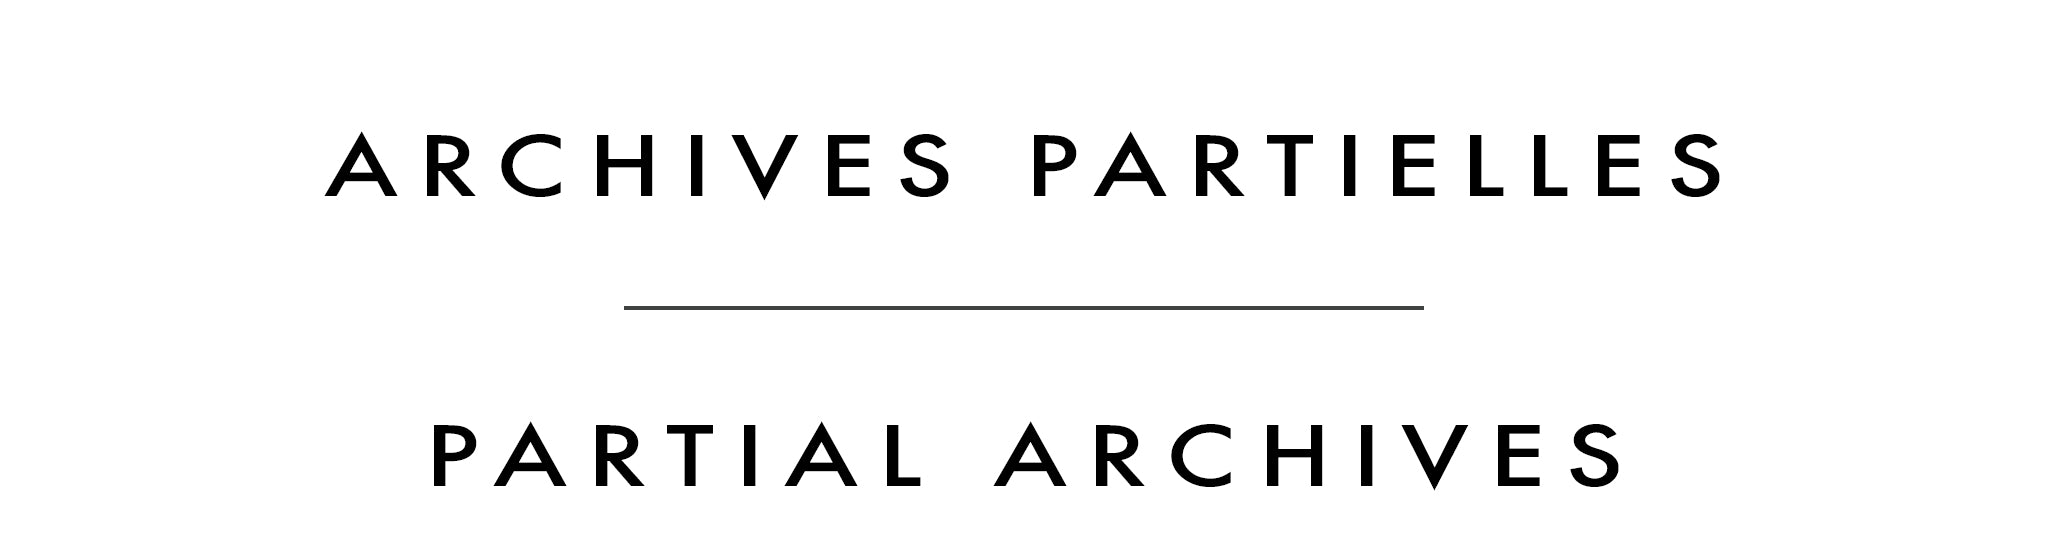 Archives partielles | Partial Archives | Christine Nadeau